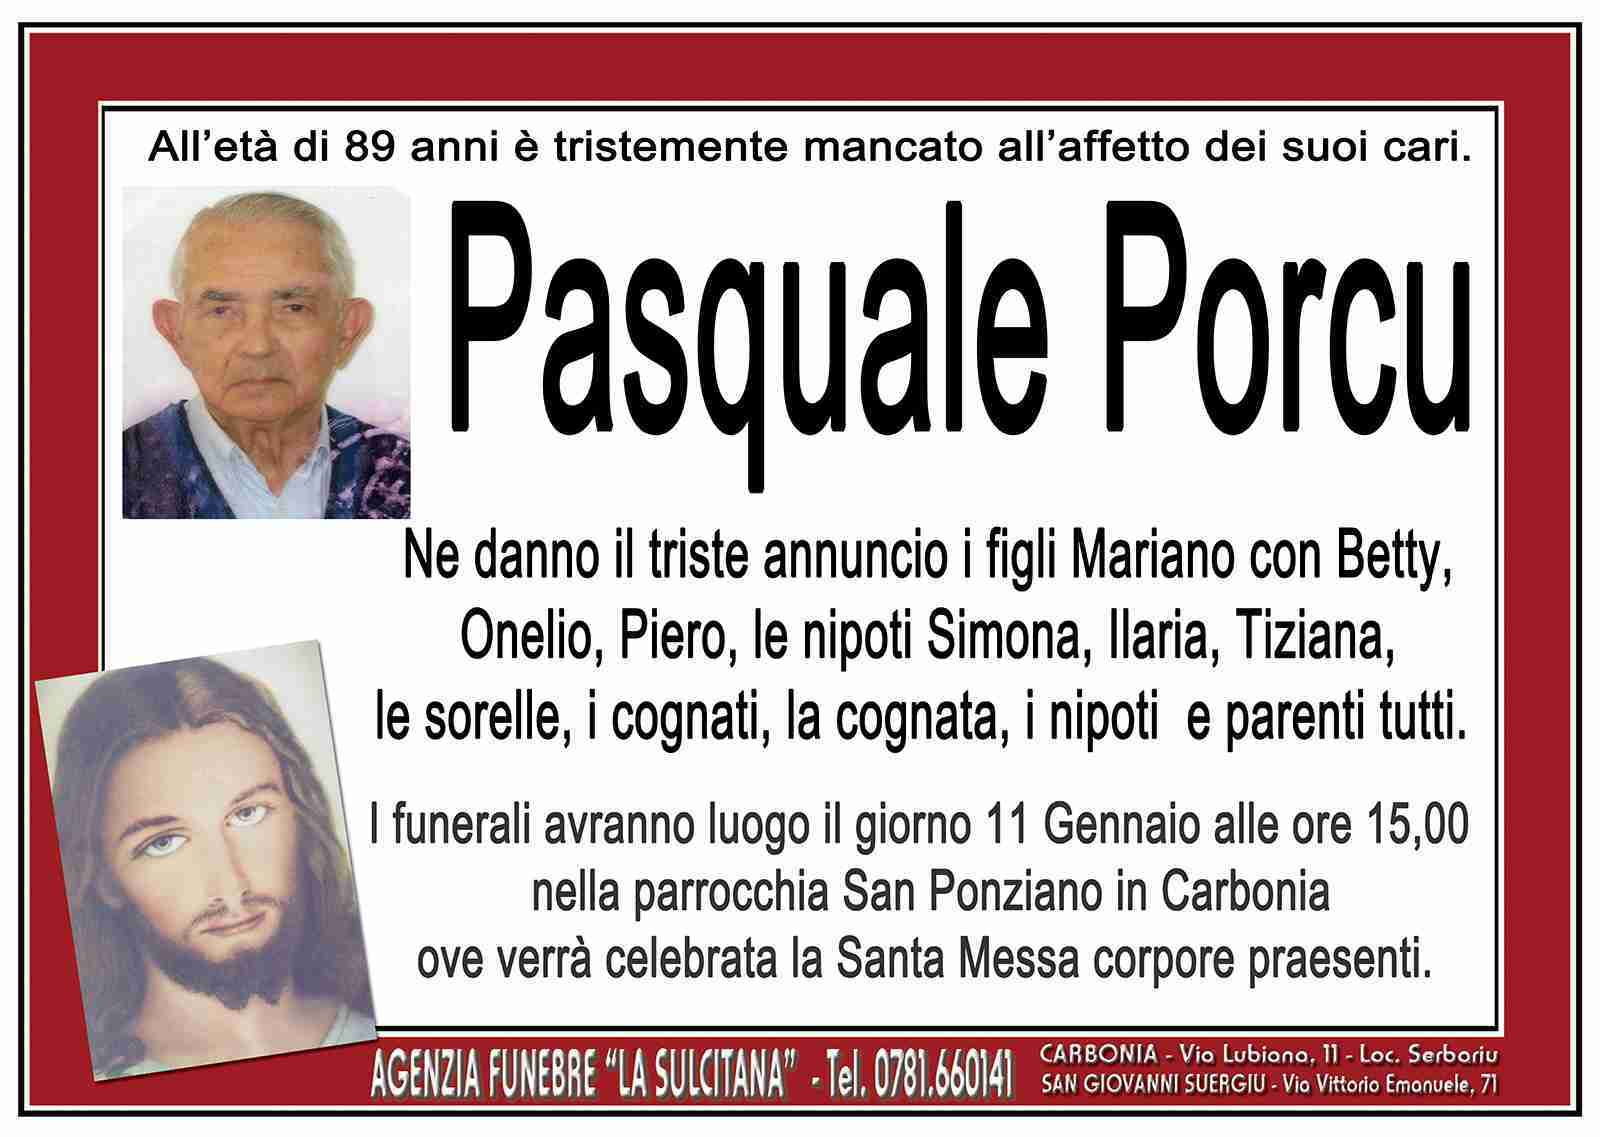 Pasquale Porcu